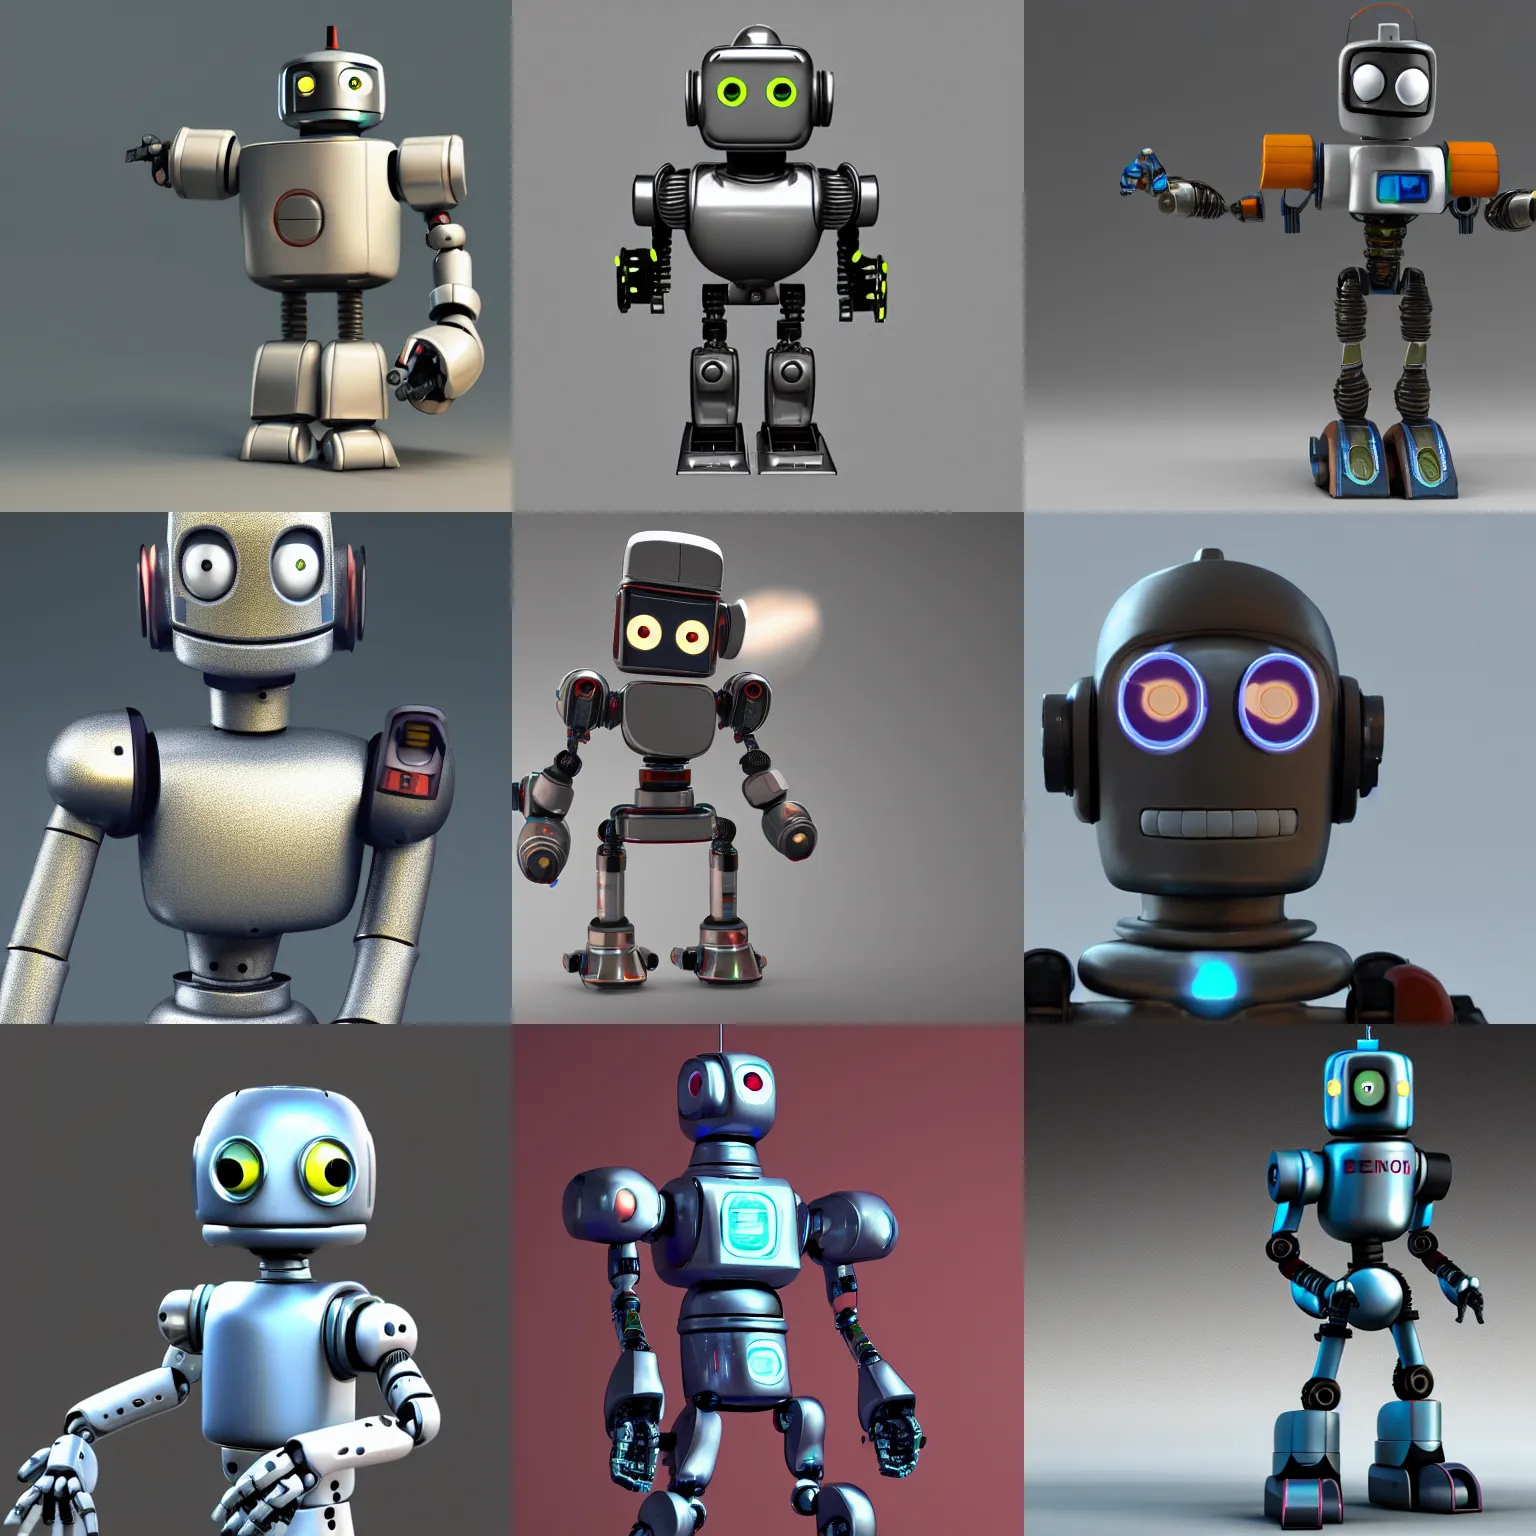 Prompt: Bender the robot, high resolution octane render